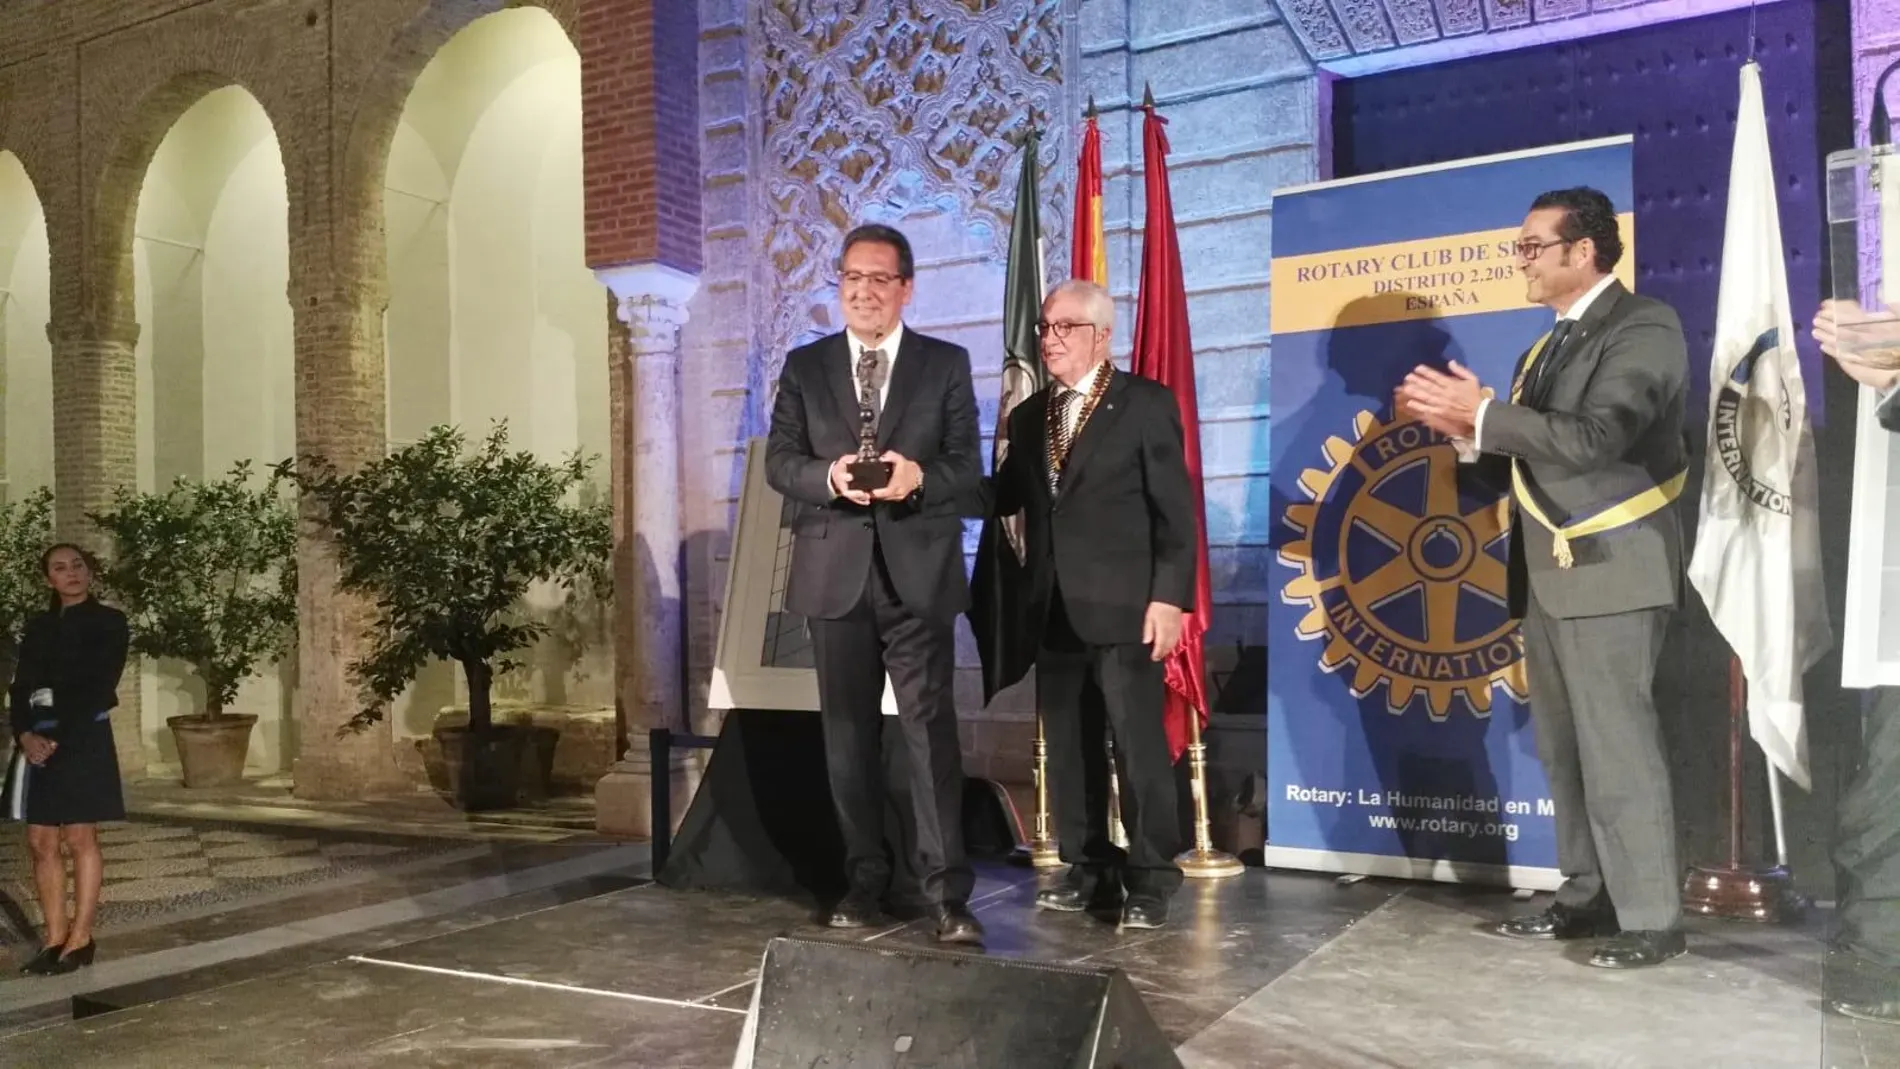 Antonio Pulido recogió el premio del Rotary Club de Sevilla en los Reales Alcázares